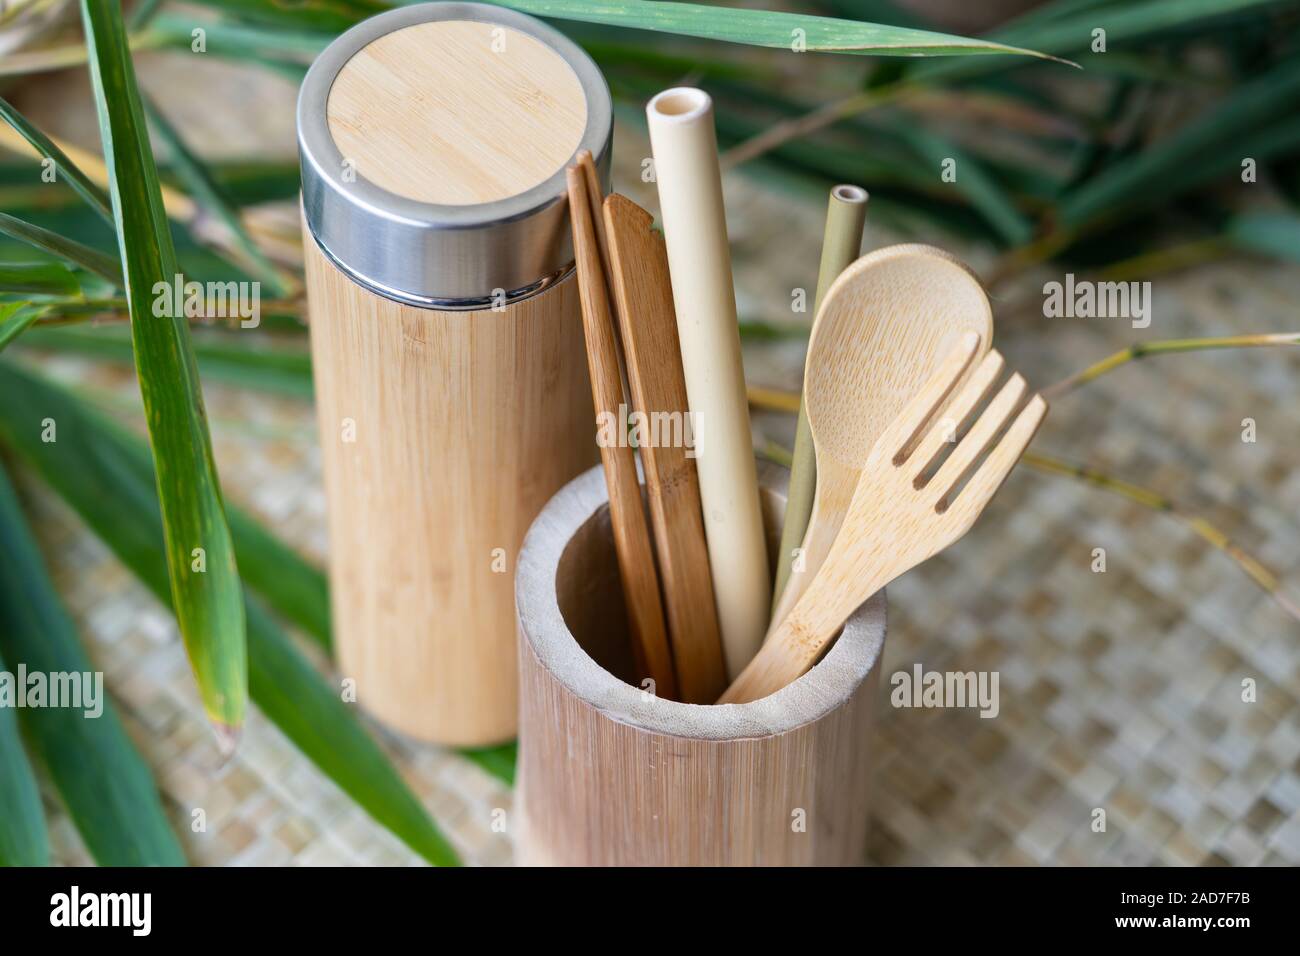 Un ensemble de couverts en bois biodégradables et tumbler potable,fait aux Philippines à partir de sources en bambou durable. Banque D'Images